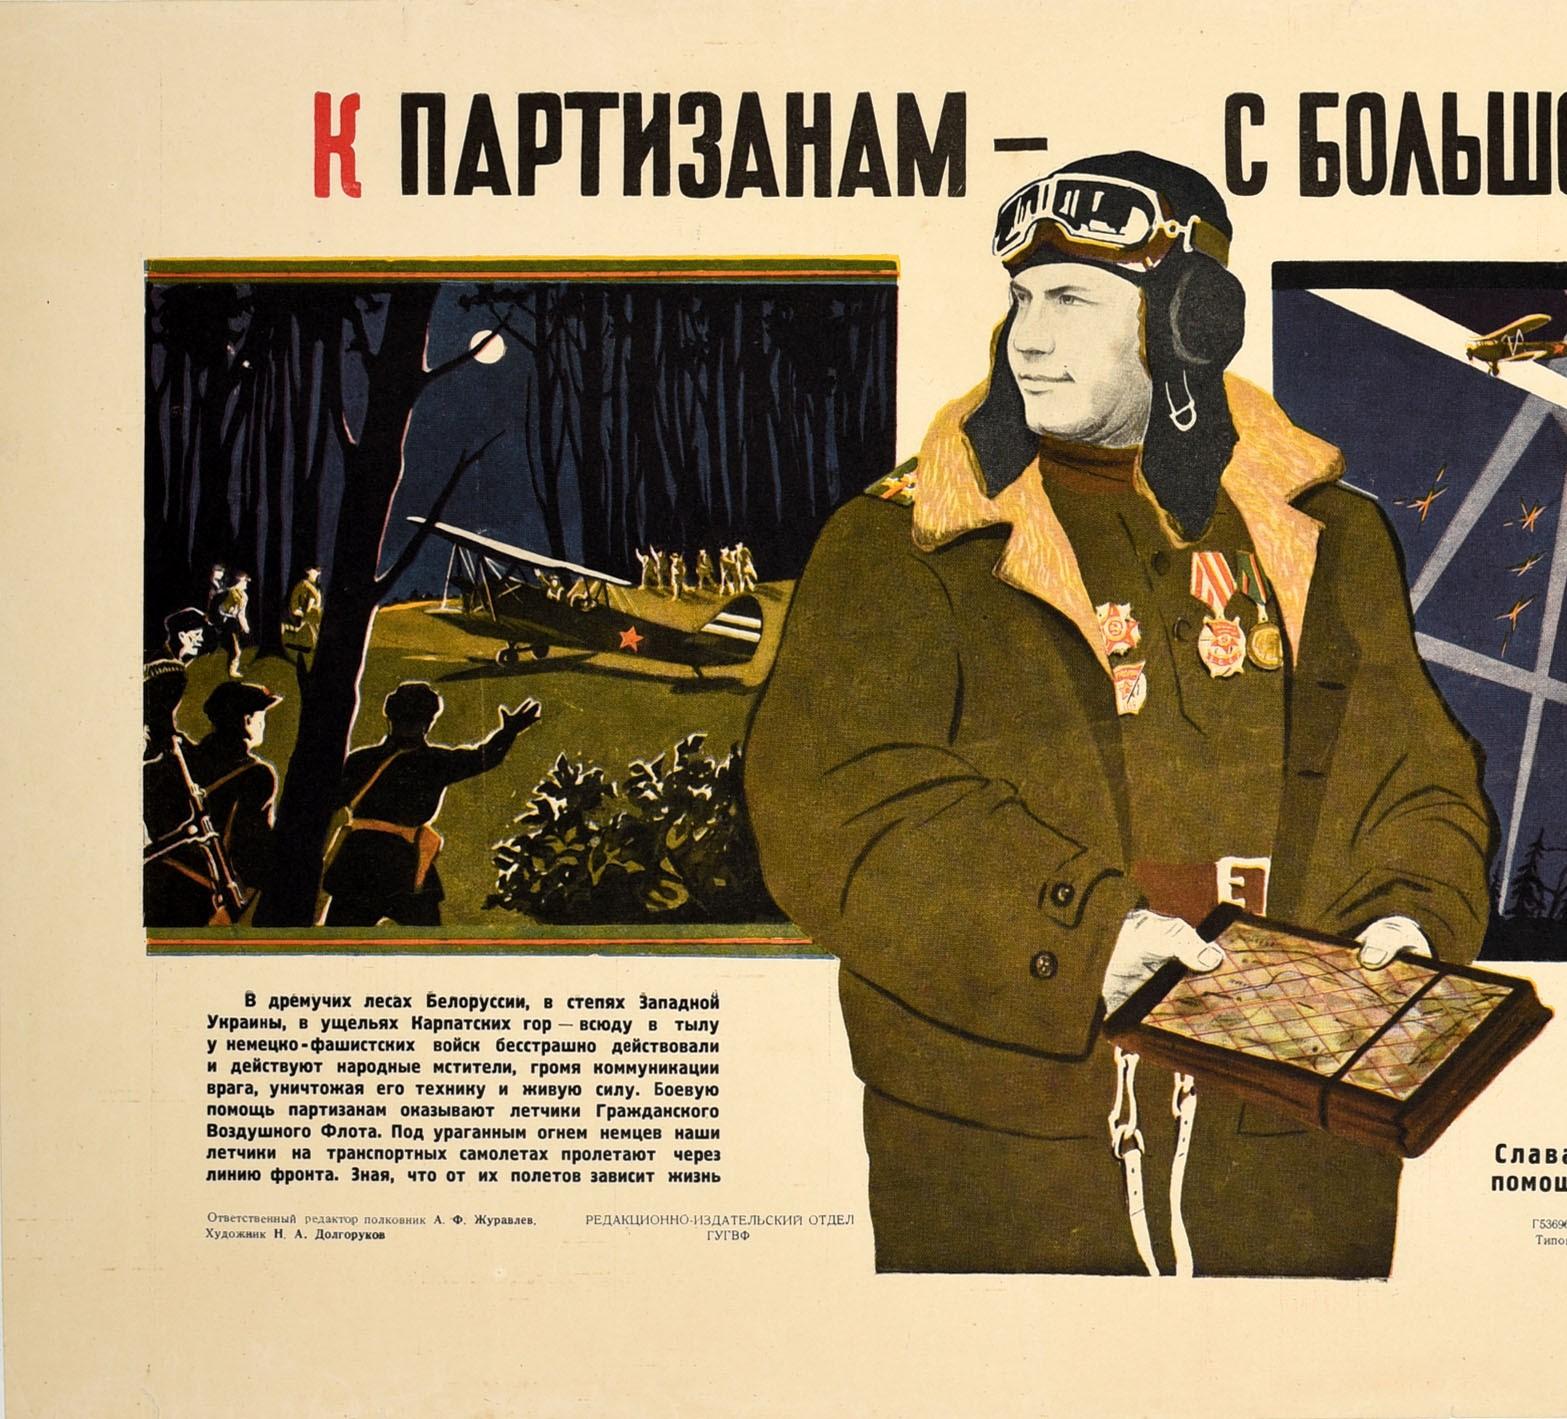 Originales sowjetisches Propagandaplakat aus dem Zweiten Weltkrieg mit einem dynamischen Design, das einen sowjetischen Luftwaffenpiloten mit Medaillen auf seiner Uniform unter einem dicken Mantel zeigt, der eine Fliegerbrille trägt und eine